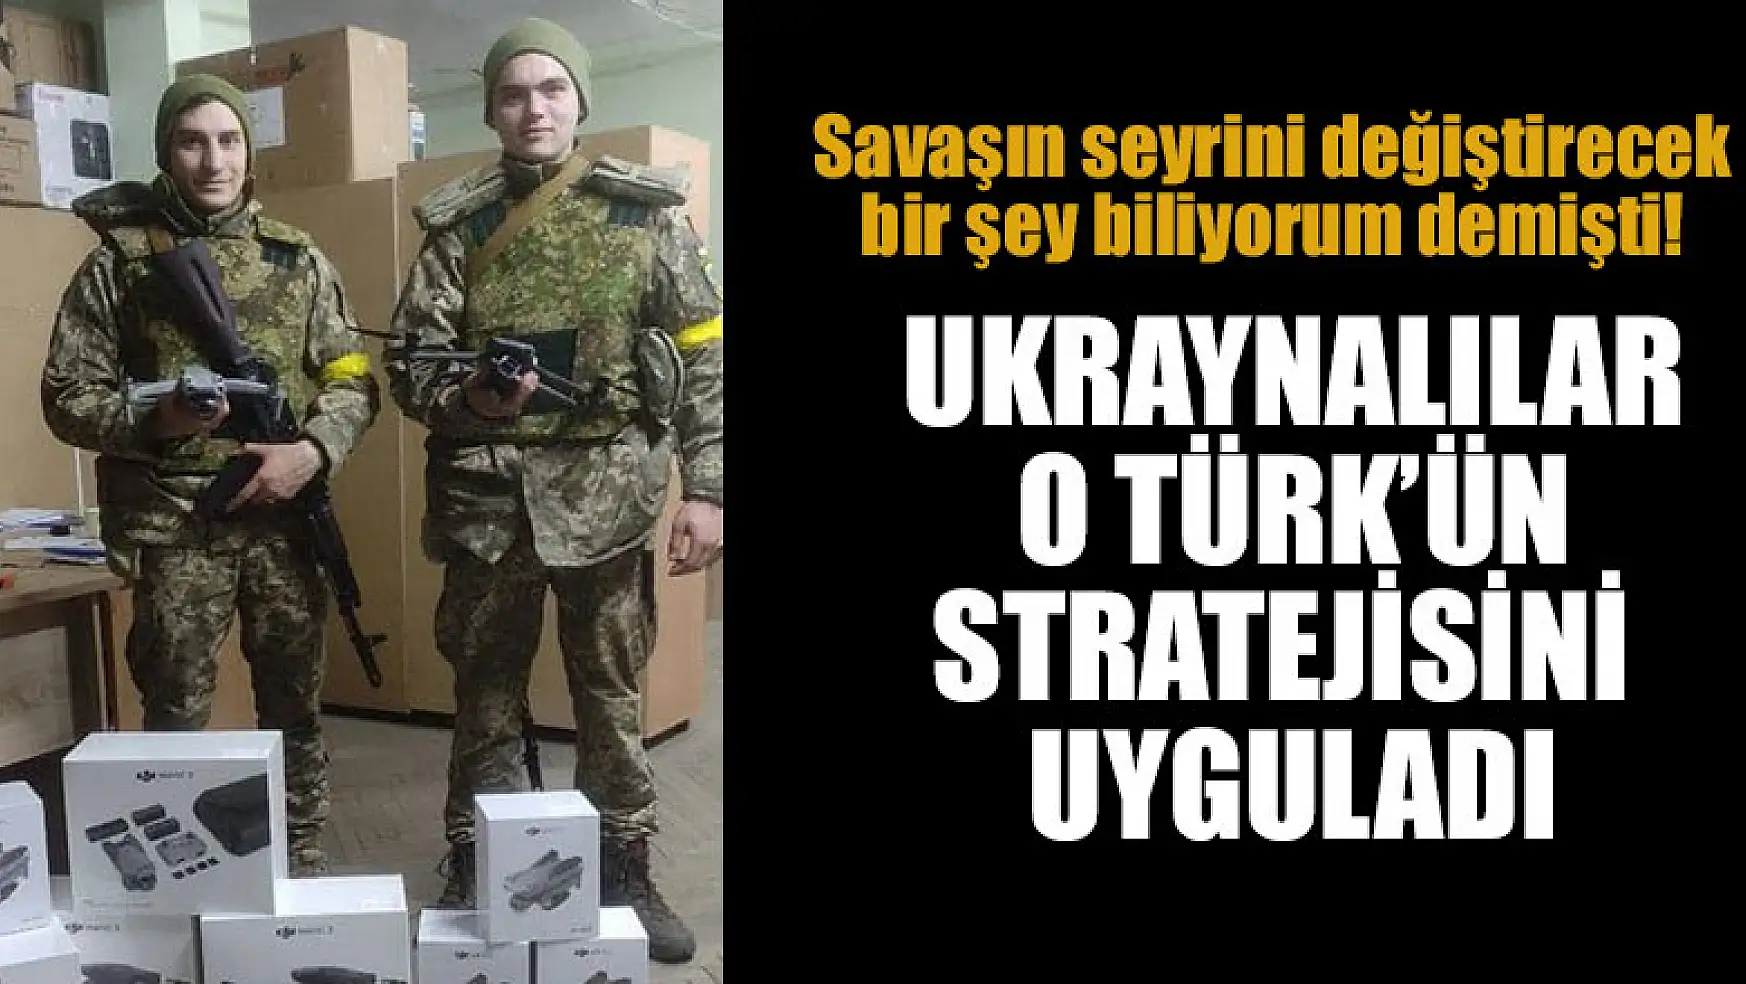 Savaşın seyrini değiştirecek bir şey biliyorum demişti! Ukraynalılar o Türk'ün stratejisini uyguladı